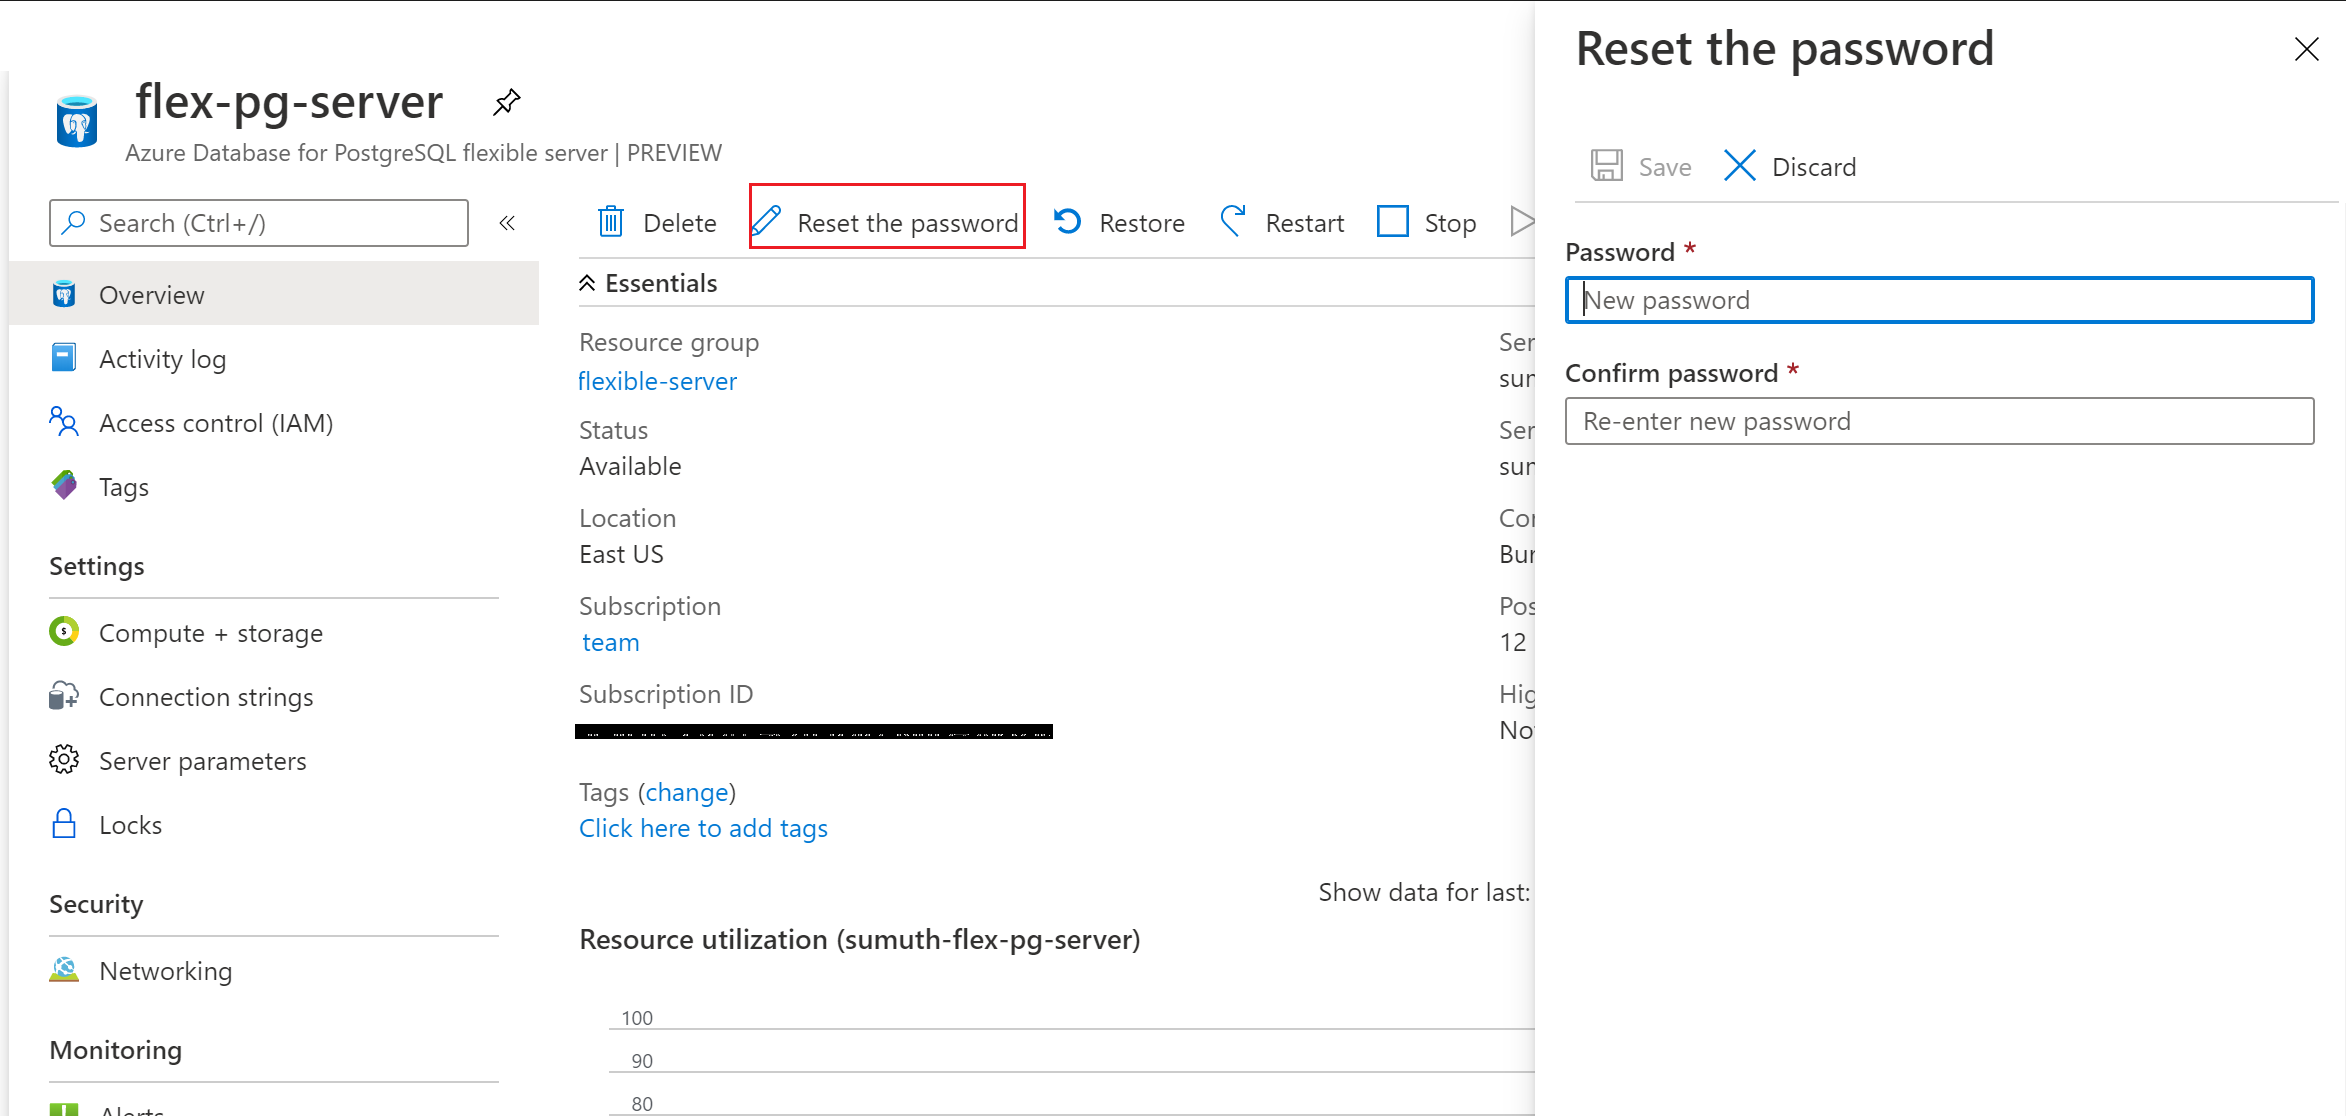 Reset your password for Azure Database for PostgreSQL flexible server.